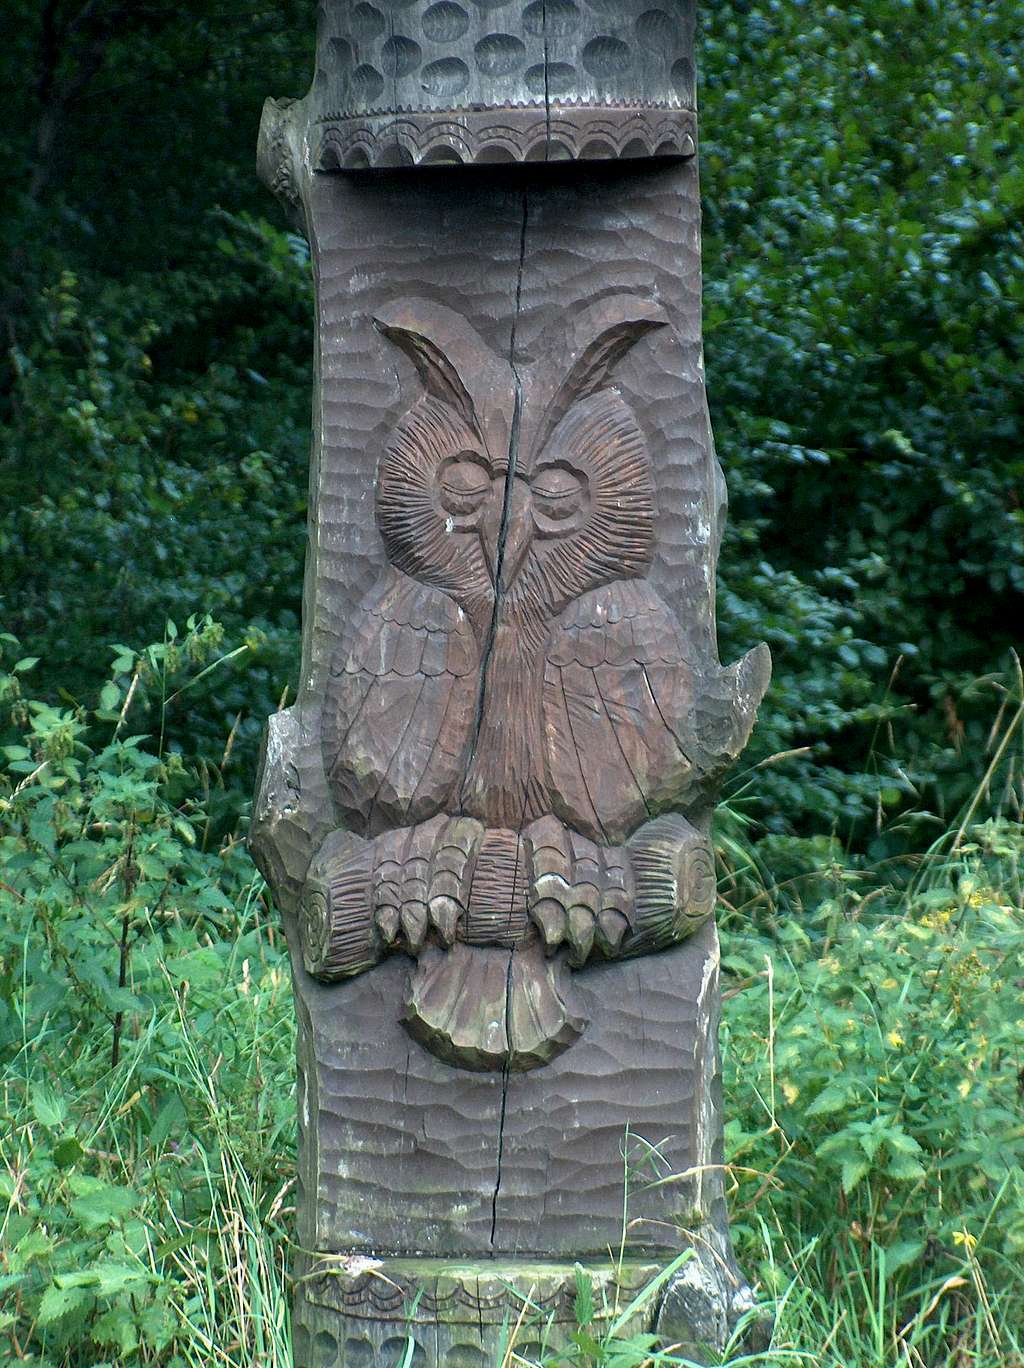 Wielka Sowa's Owl statue